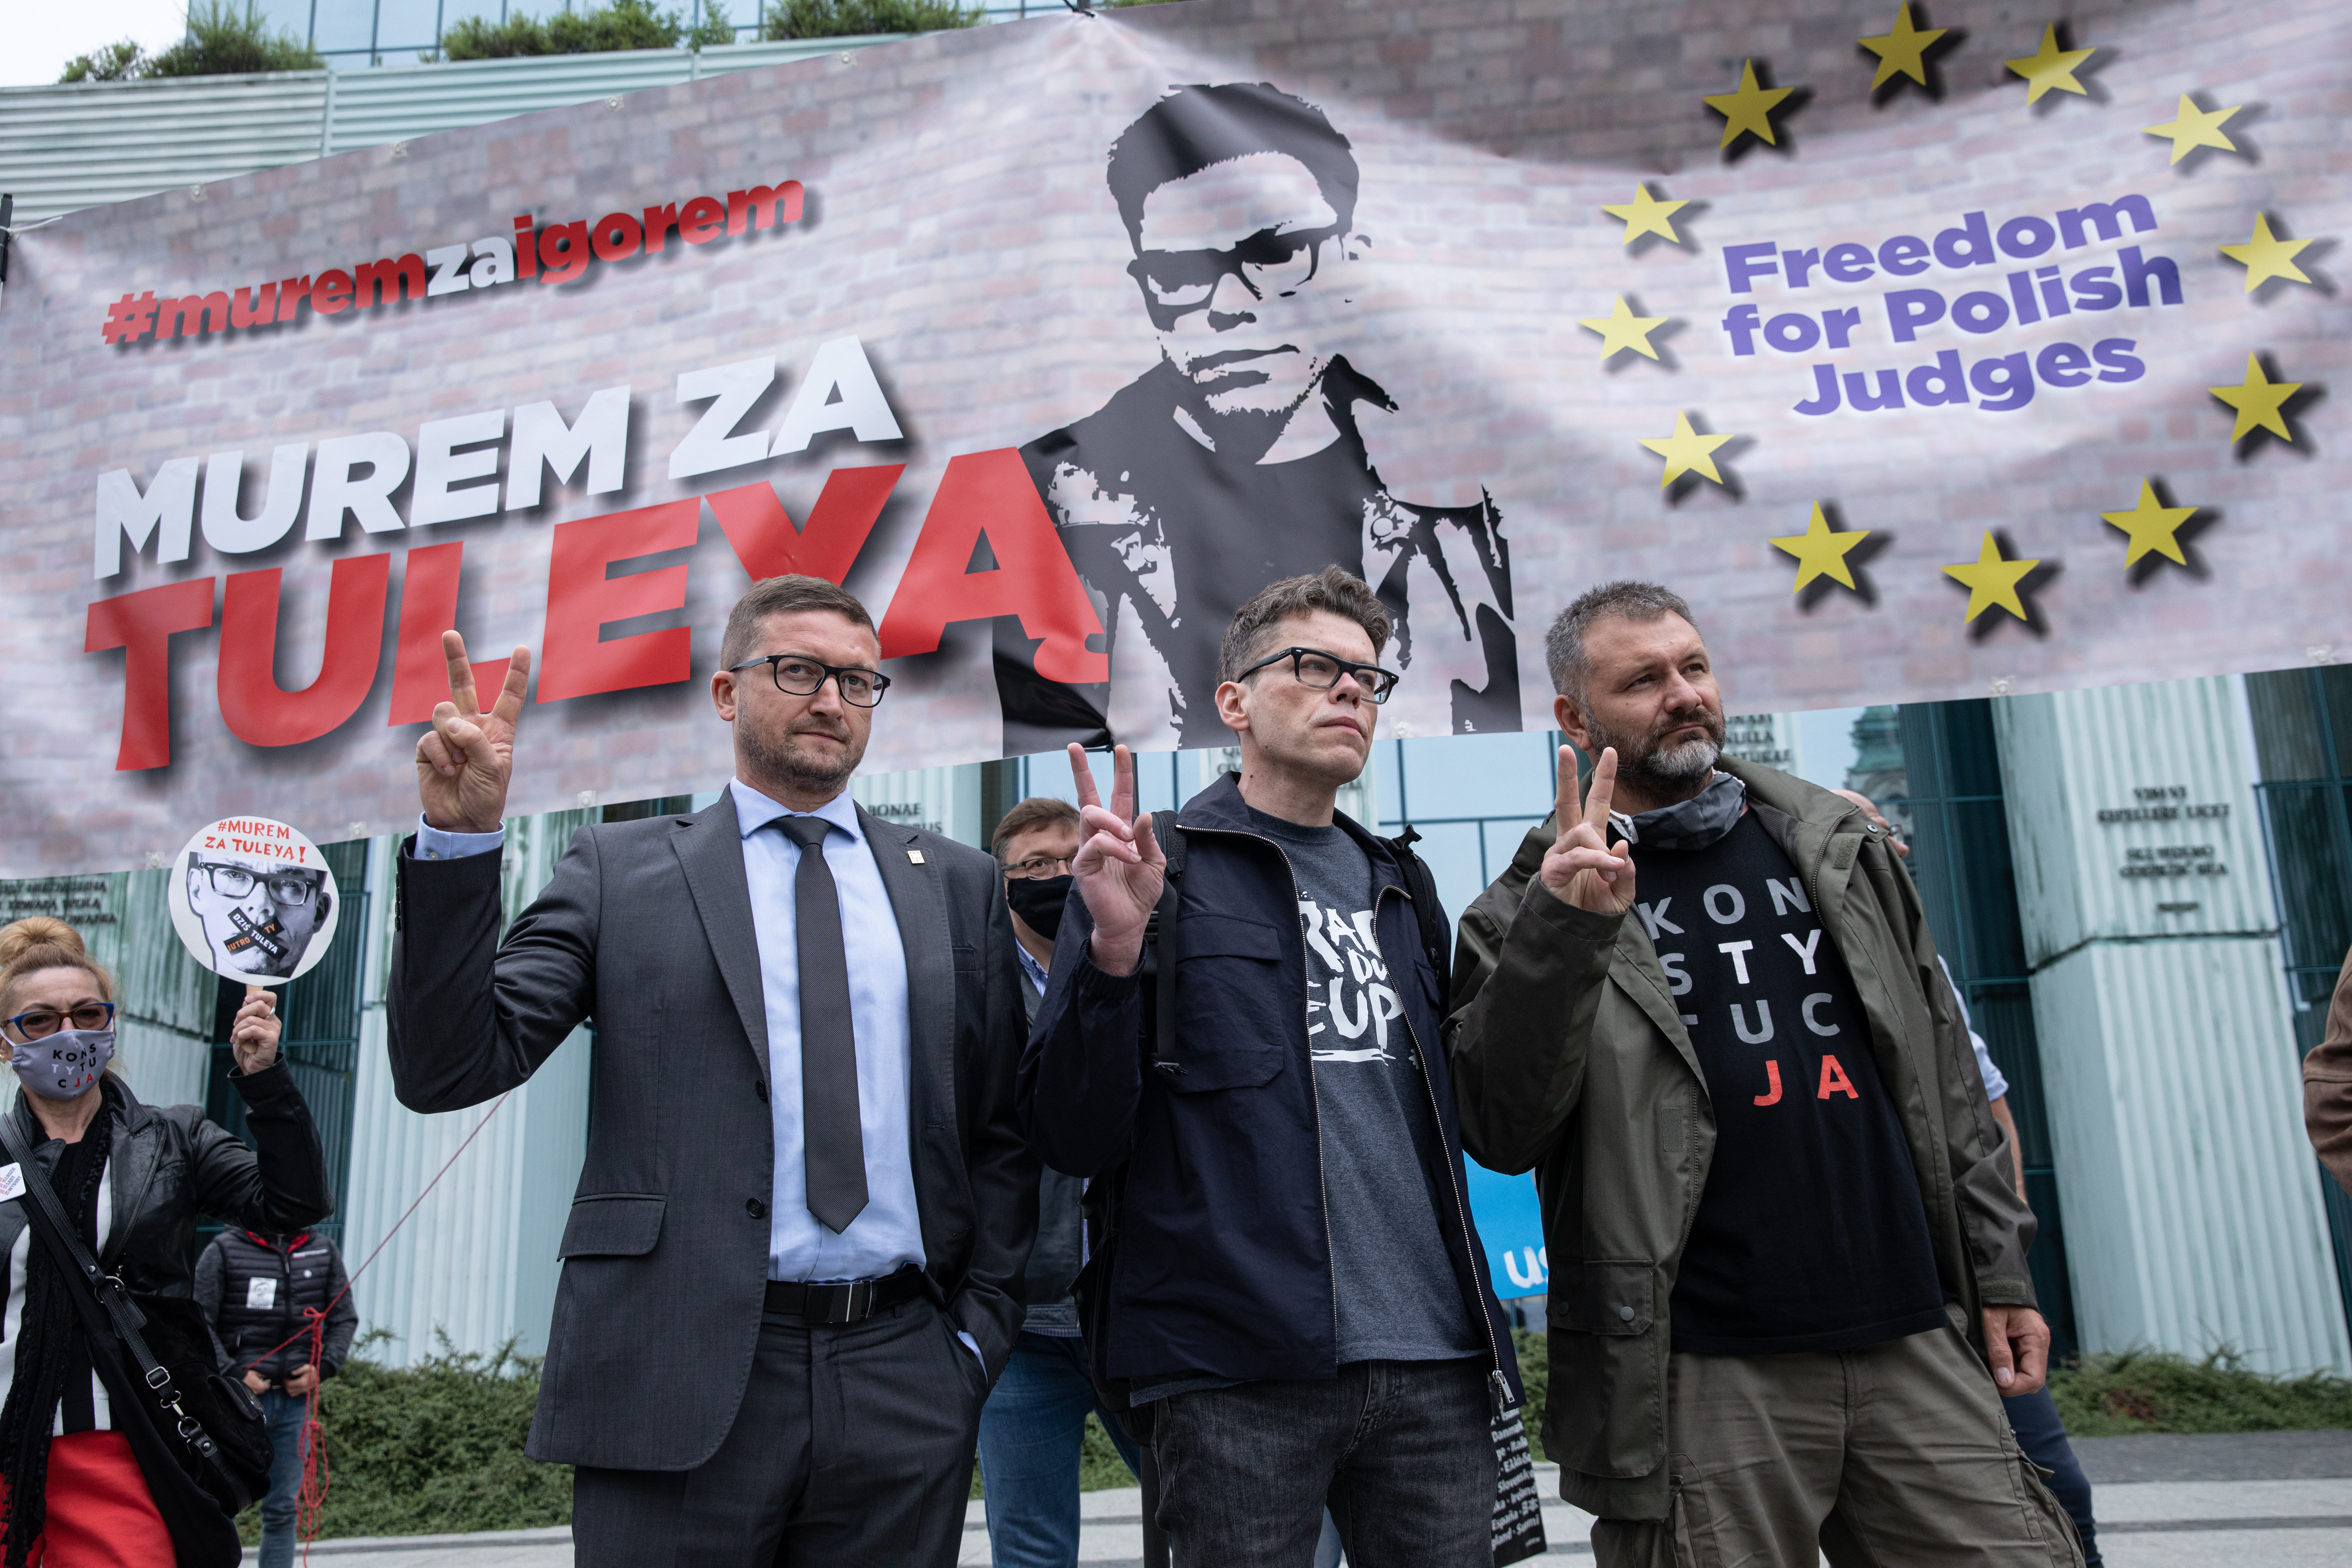 Sędziowie Paweł Juszczyszyn, Igor Tuleya, Waldemar Żurek przed siedzibą Sądu Najwyższego podczas demonstracji wsparcia dla sędziego Tulei, Warszawa, 9 czerwca 2020 r.